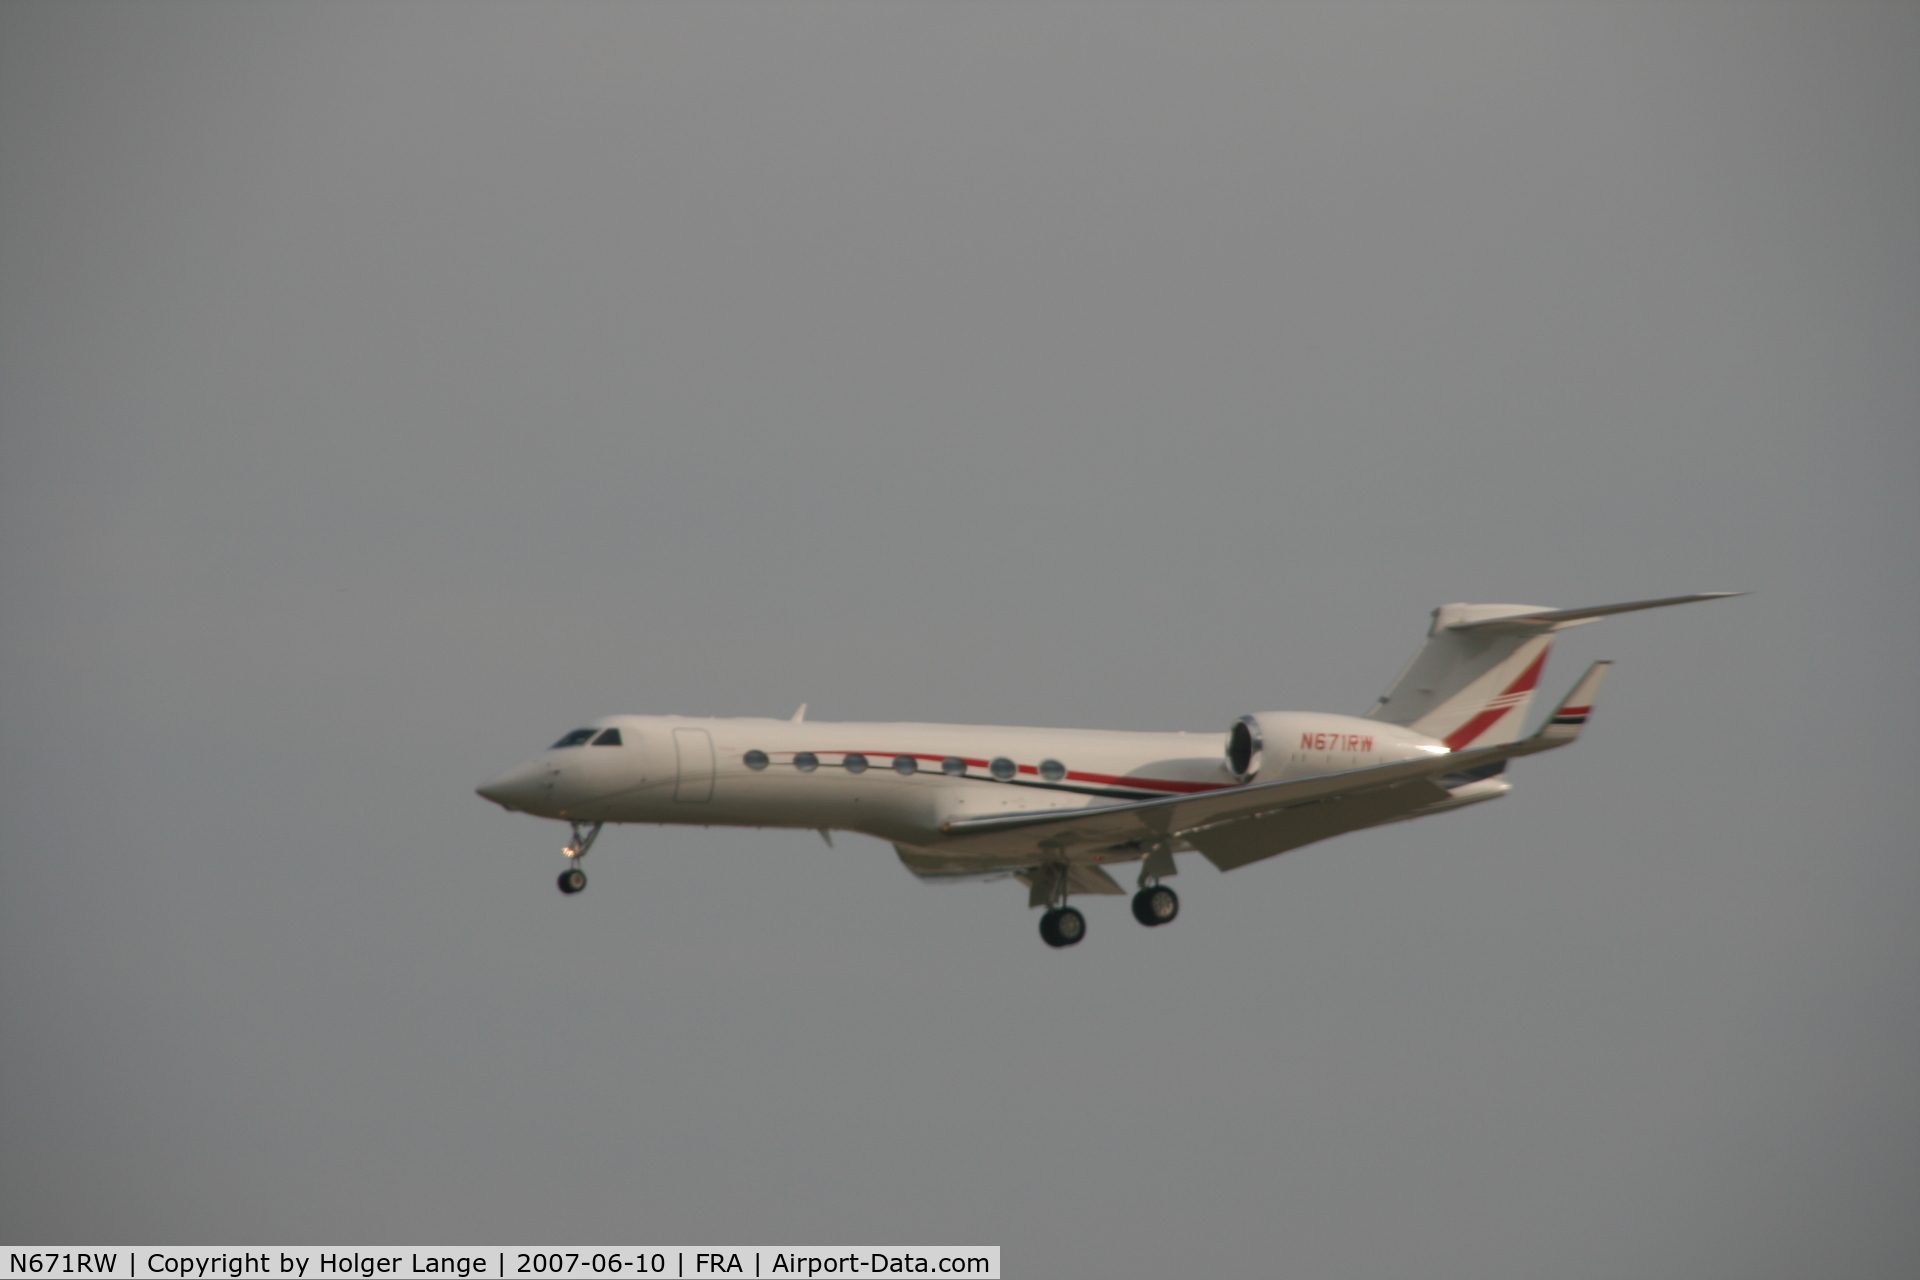 N671RW, 2006 Gulfstream Aerospace GV-SP (G550) C/N 5131, Landing in Frankfurt, Germany